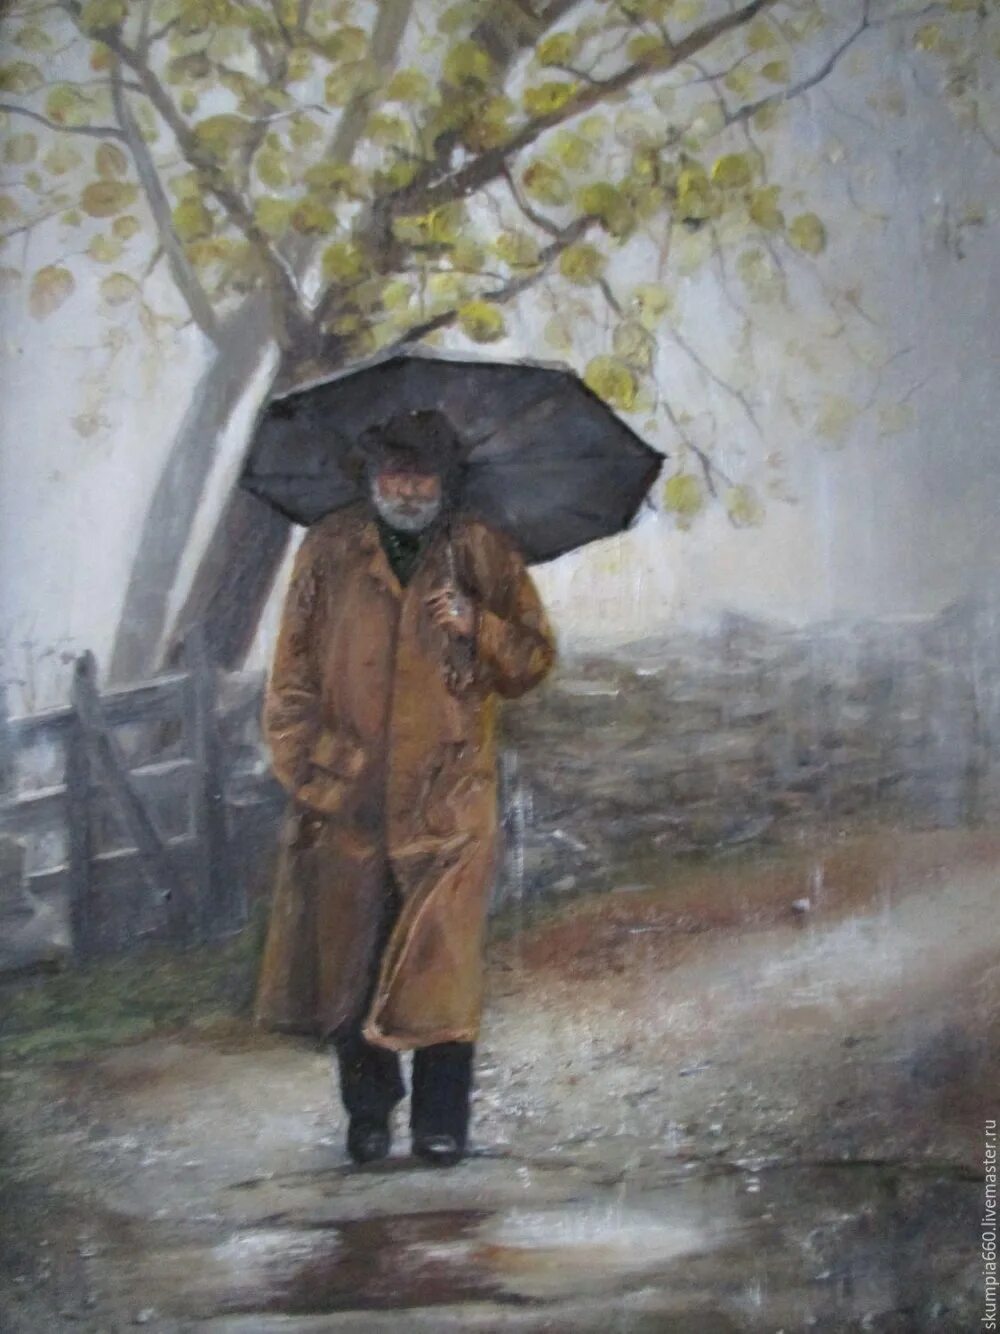 Впереди всех быстро шел небольшой сухонький старичок. Люди под осенним дождем. Картина человек с зонтом. Мужчина с зонтом. Люди под дождем осень.